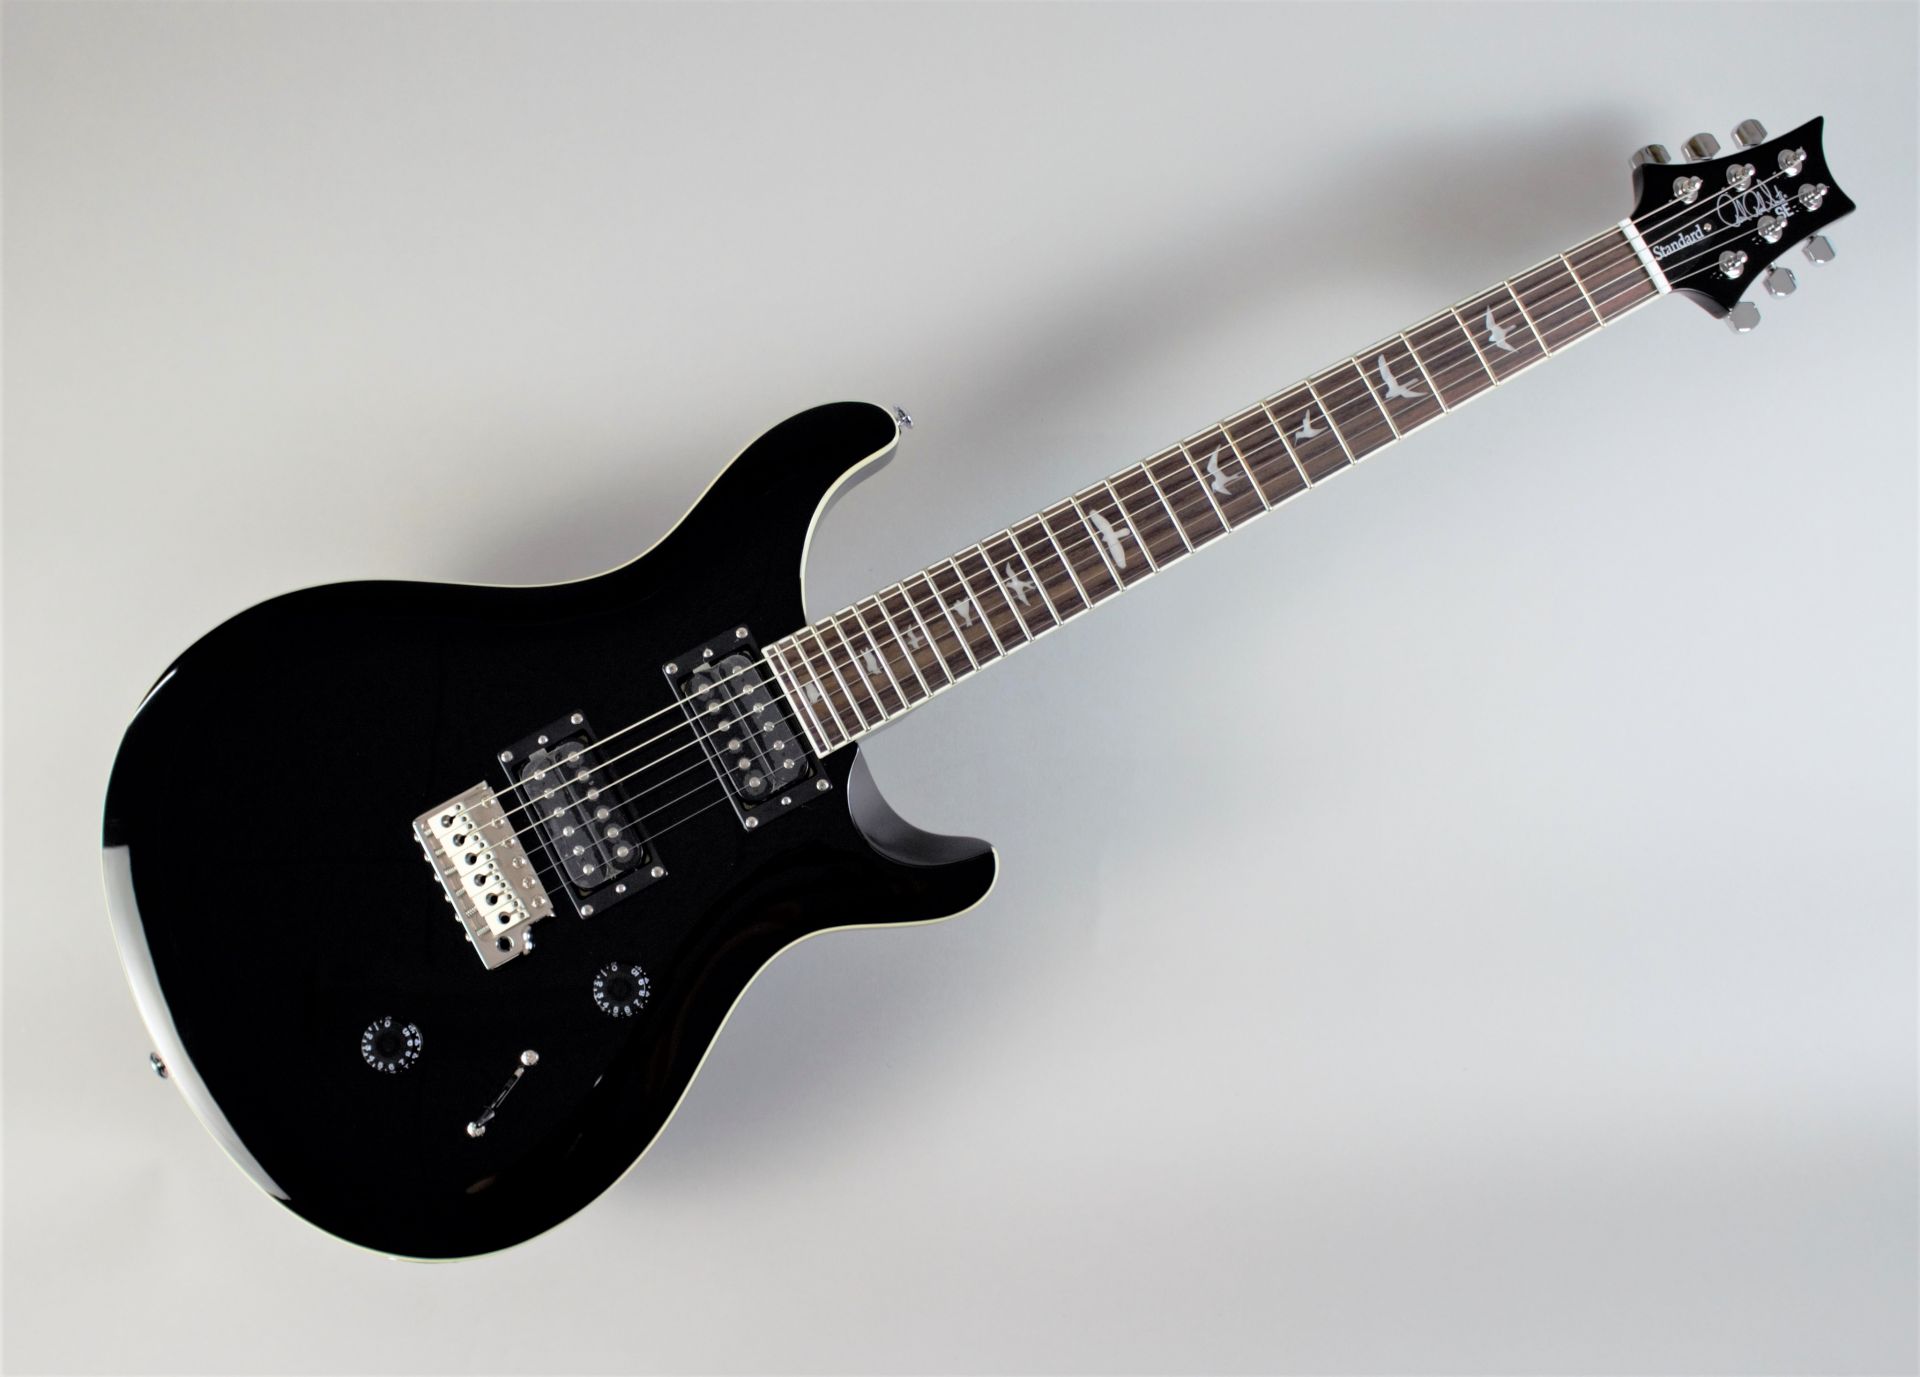 *【入荷しました！】！精悍なBLACKカラーを身にまとったSE Standard 24 「初めてのギター」にも「“これぞ”の1本」にも最適なギター「PRS SE Standard 24」 今回このオリジナルカラーを採用した島村楽器オーダーモデルが発売！ - PRS STANDARD 24シリーズをベ […]